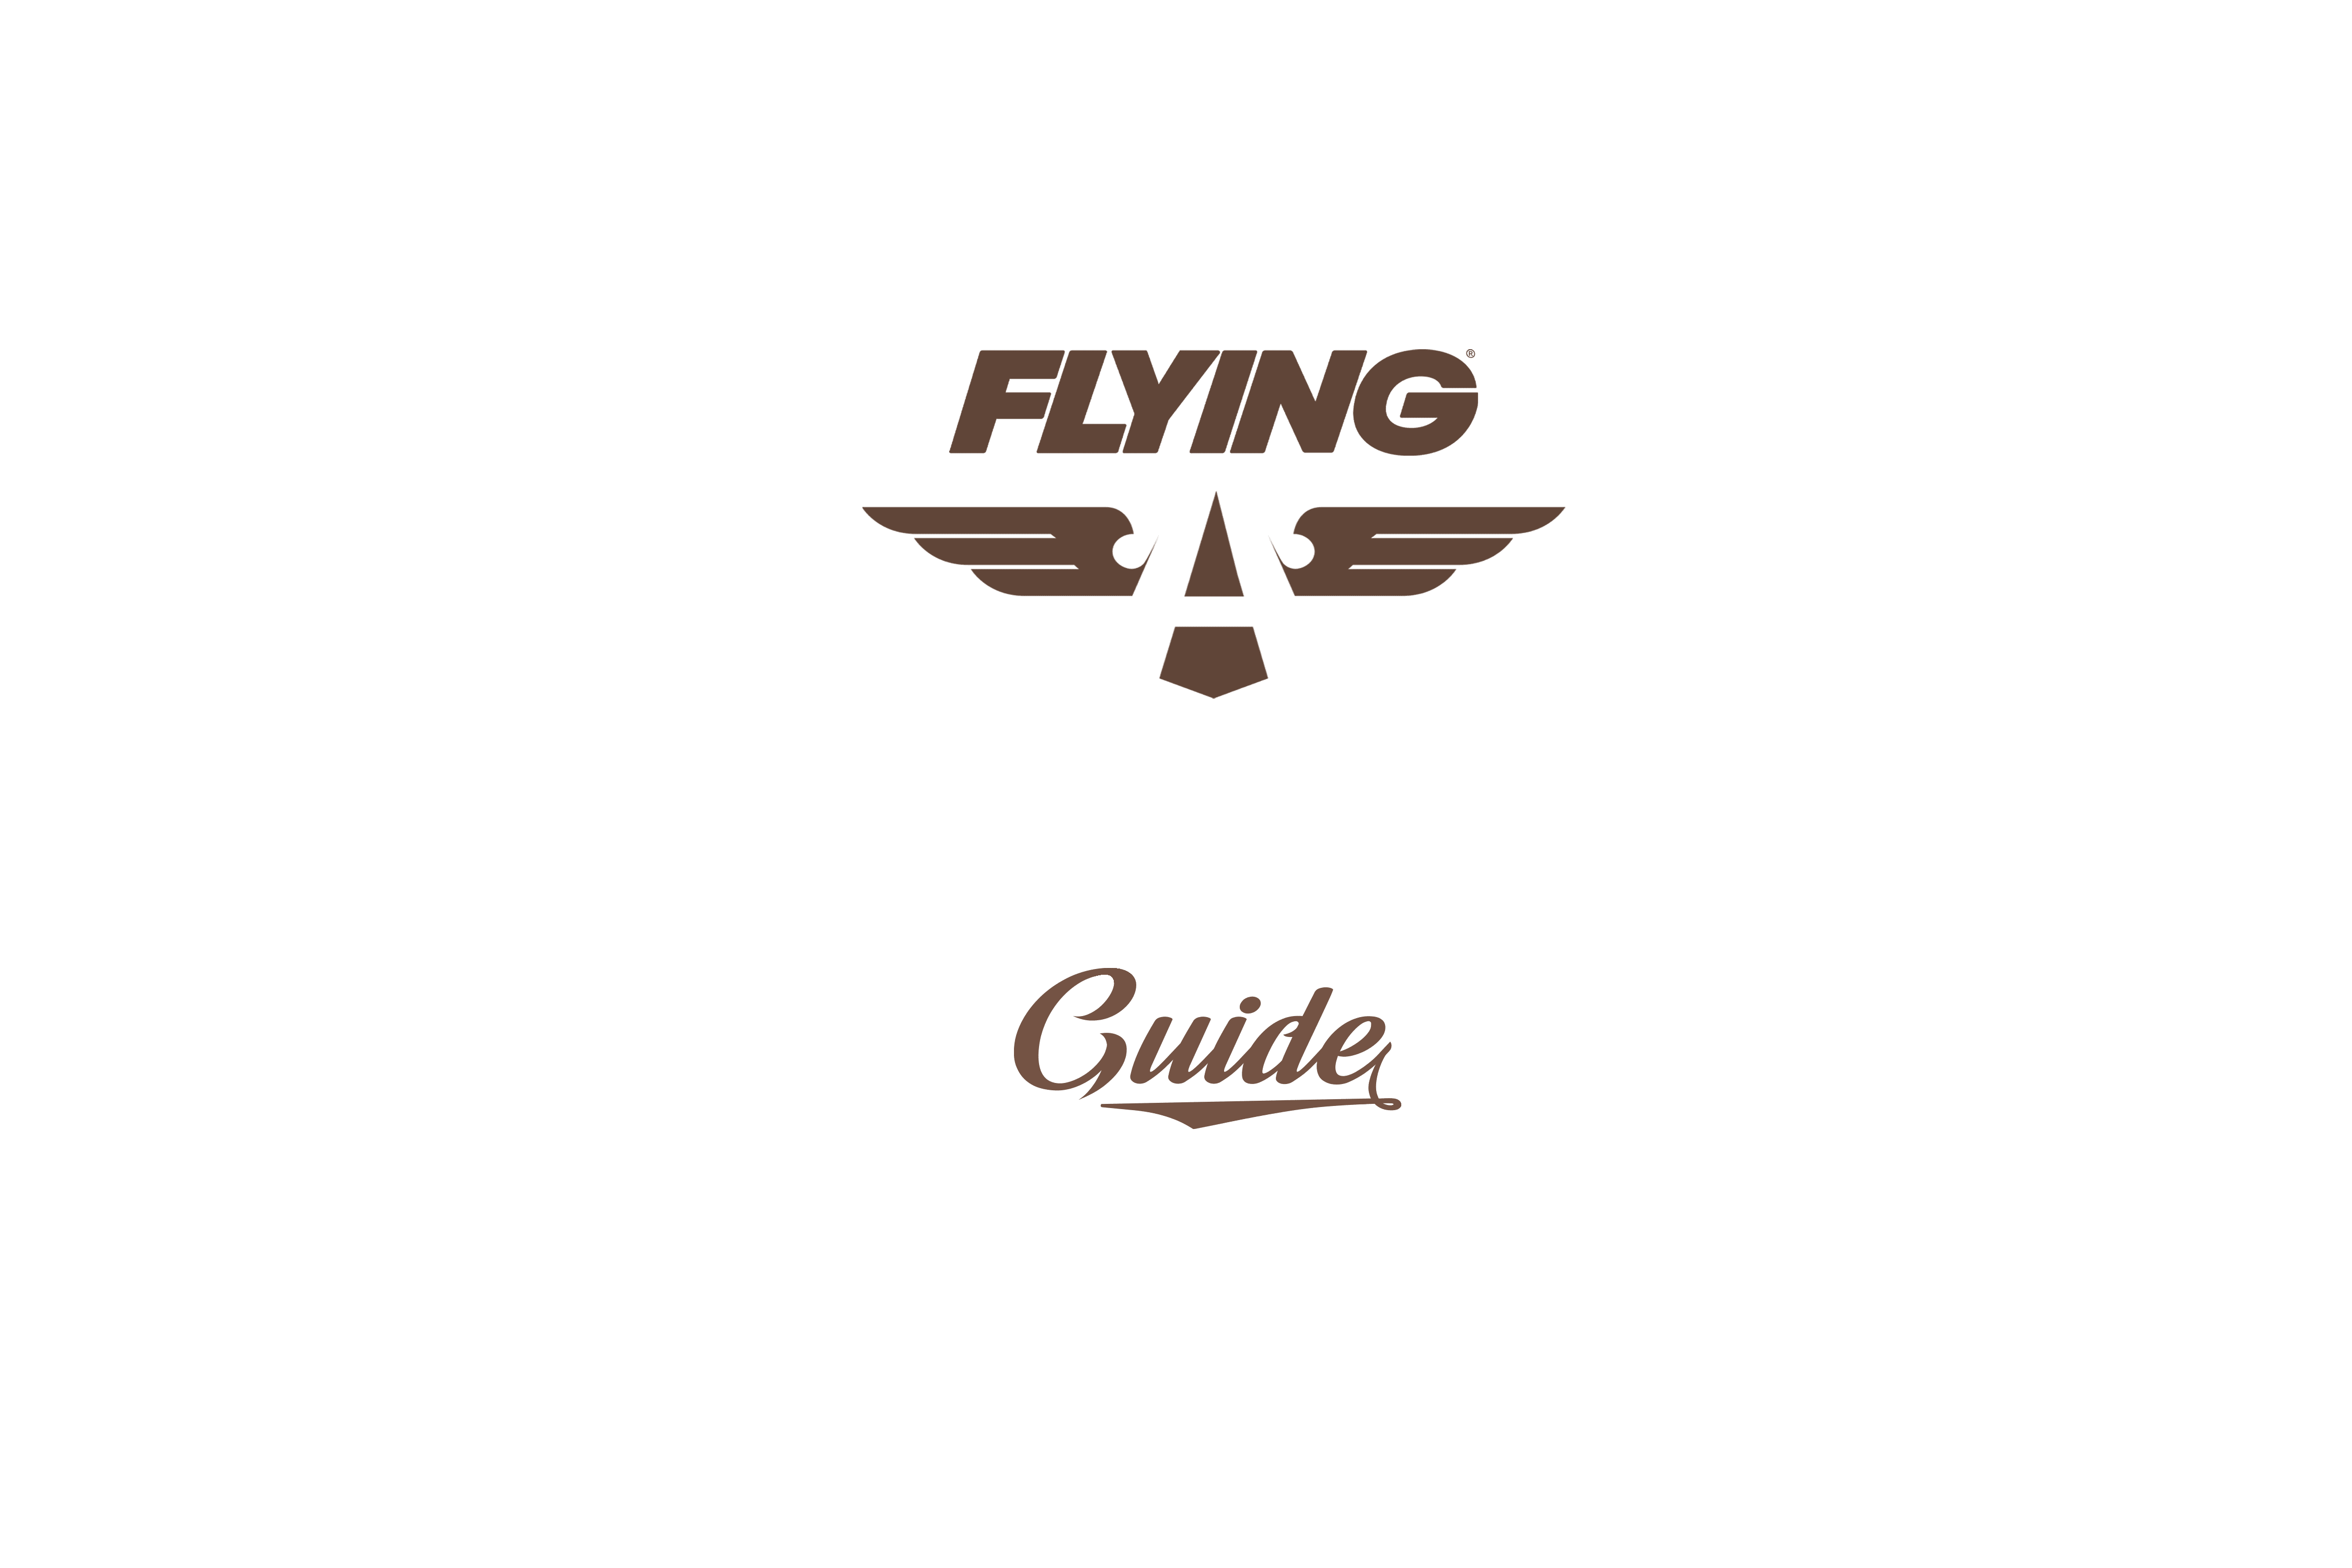 FLYING Flight
							 School Guide